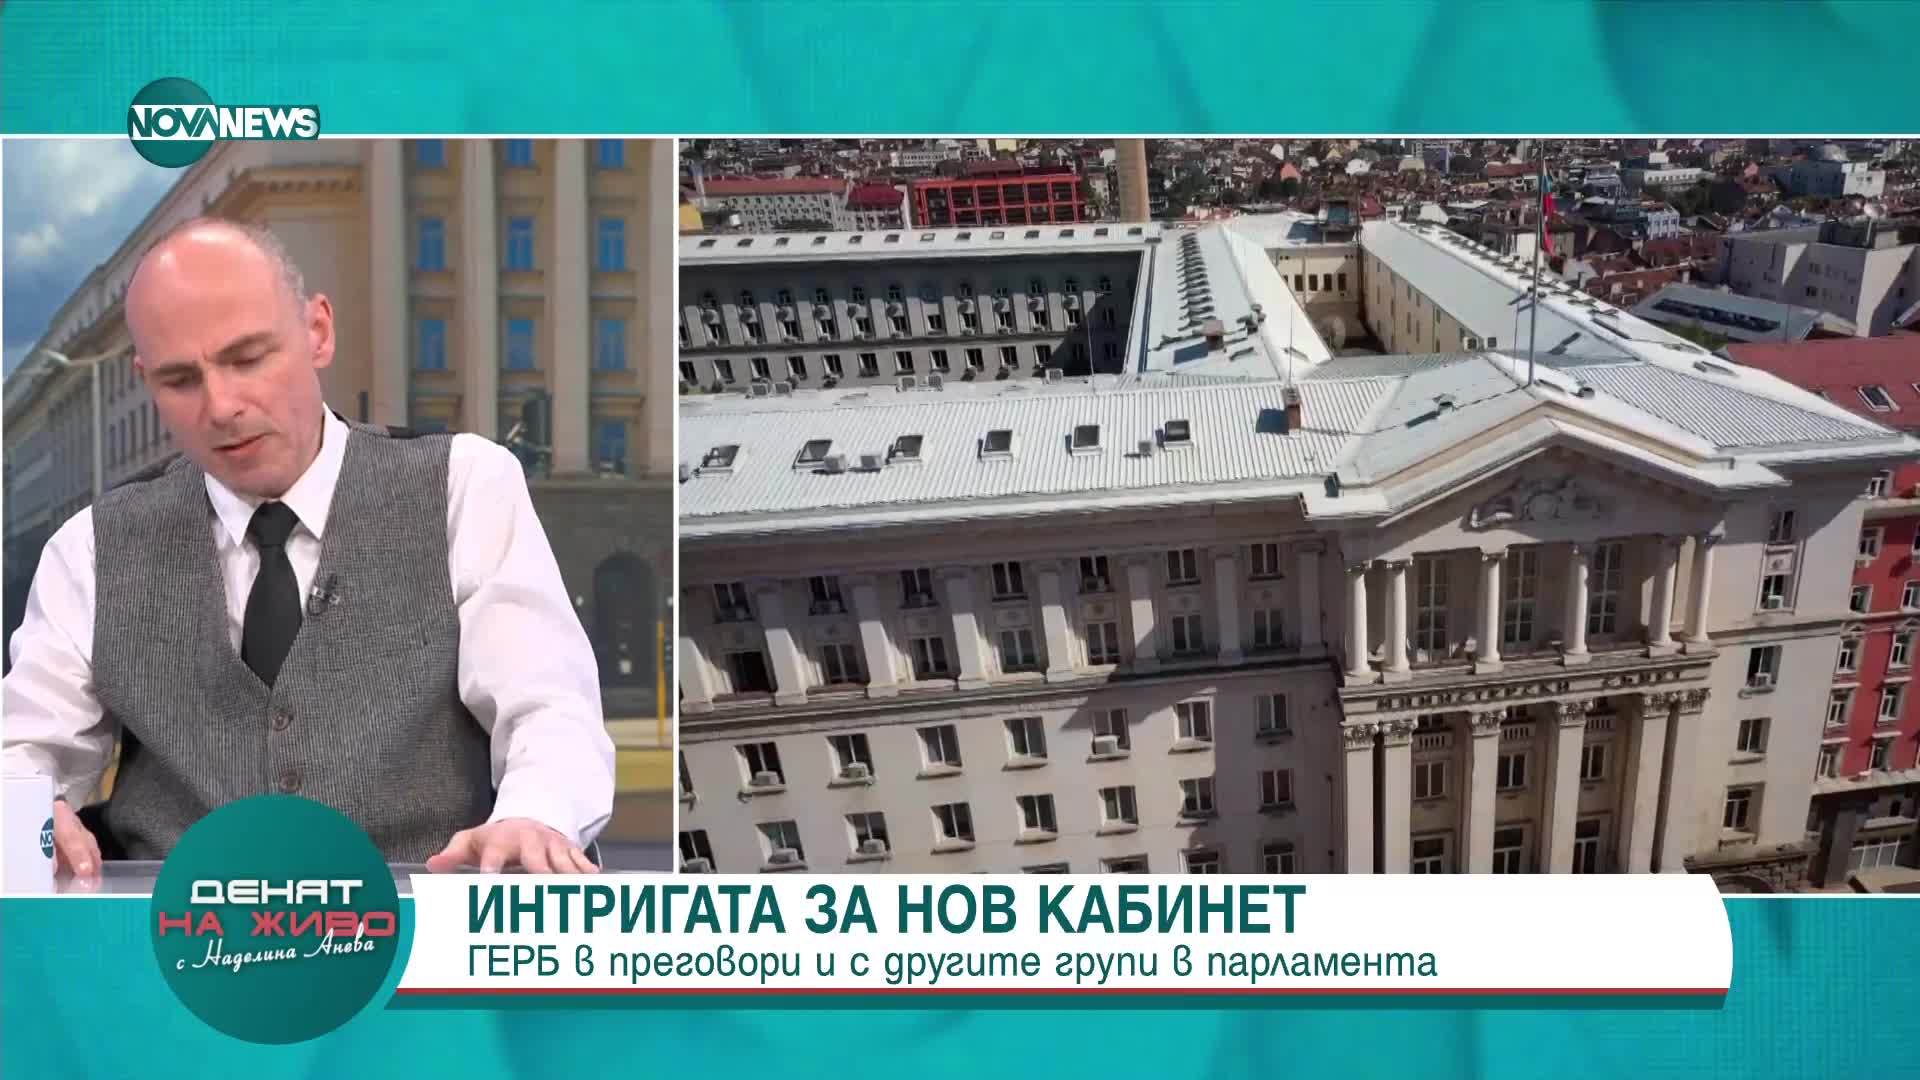 Петър Чолаков: Бюджет ще се приеме, дори да отидем на предсрочни избори